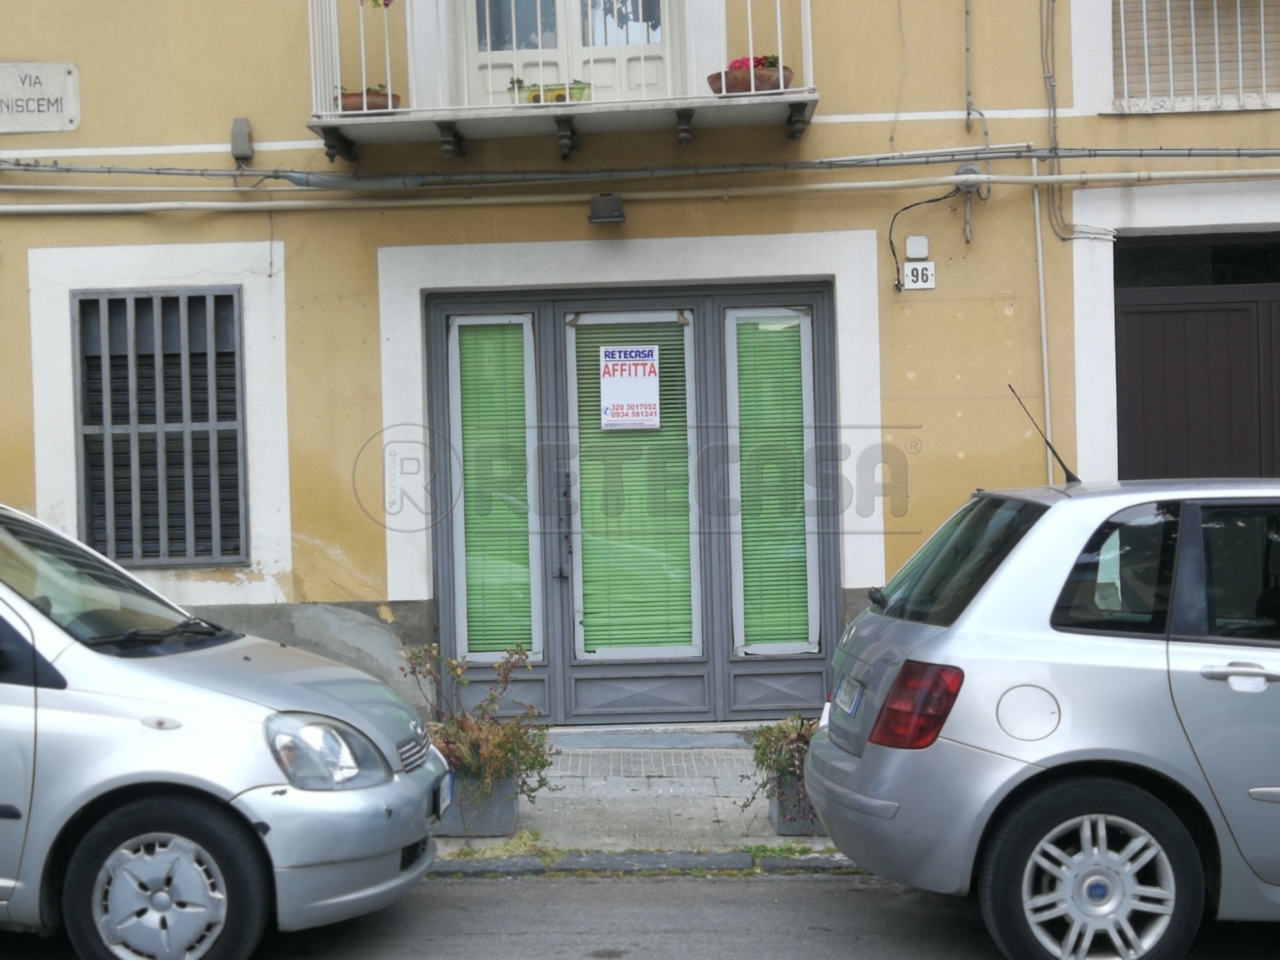 Laboratorio in vendita a Caltanissetta, 2 locali, prezzo € 25.000 | PortaleAgenzieImmobiliari.it